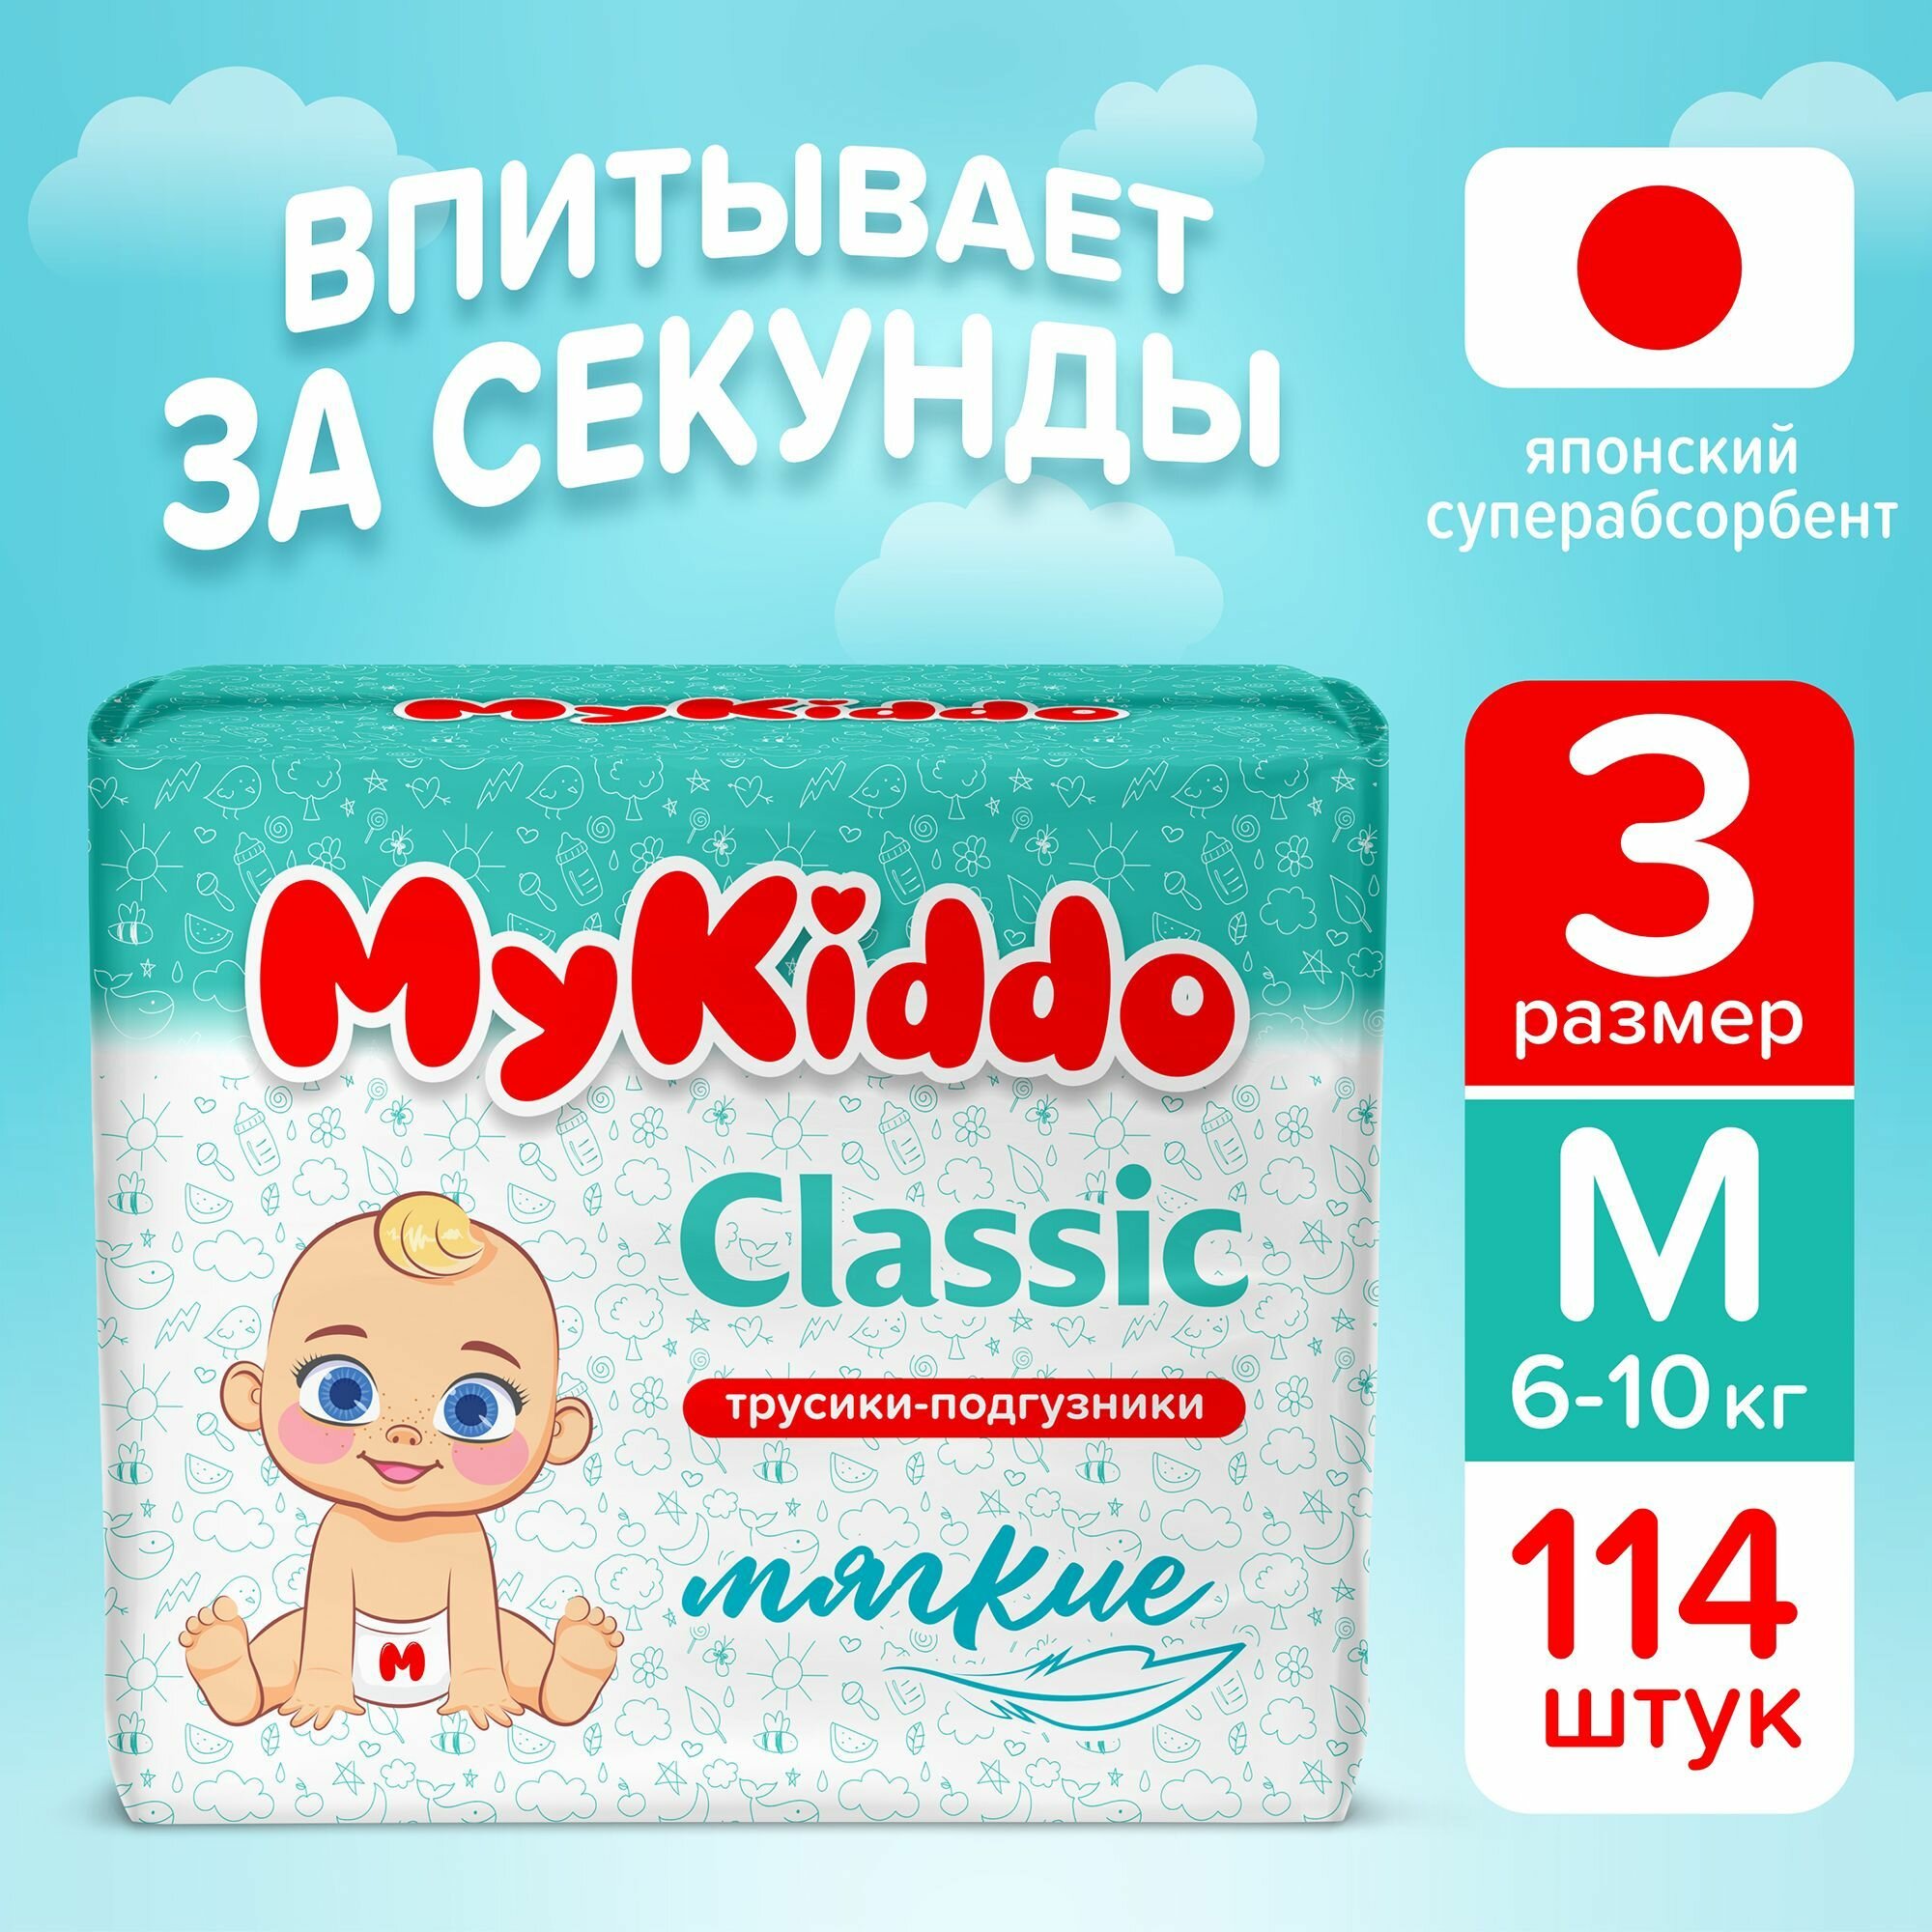 Подгузники трусики детские MyKiddo Classic размер 3 M, для детей весом 6-10 кг, 114 шт. (3 упаковки по 38 шт.)